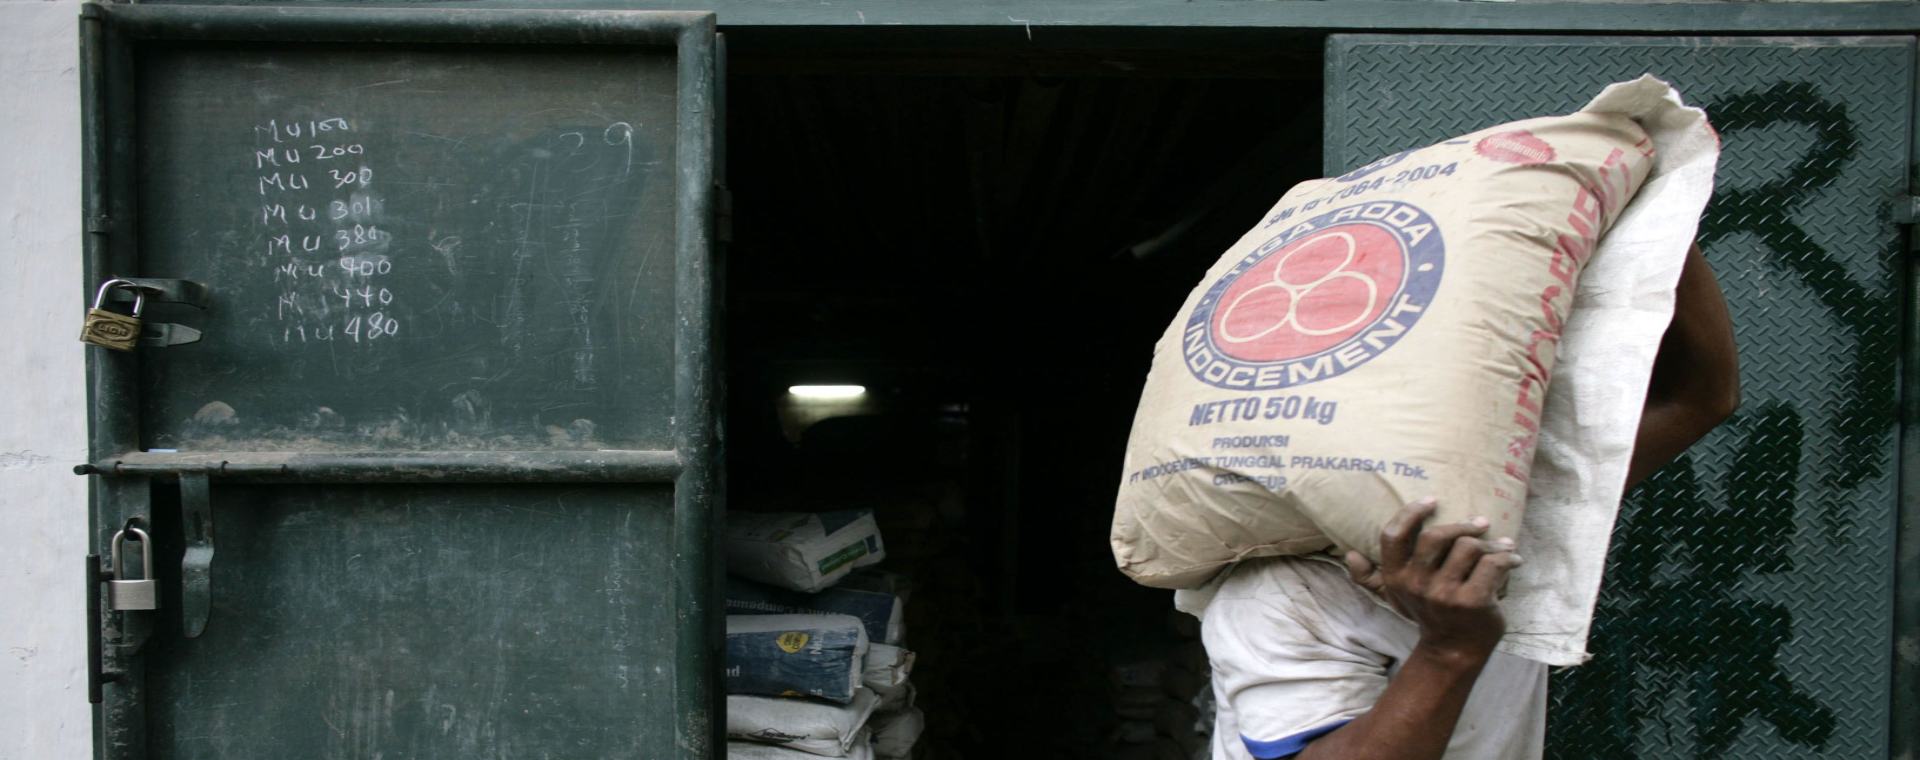 Seorang pekerja mengantarkan karung semen PT Indocement Tunggal Prakarsa ke sebuah toko di Jakarta, Indonesia, Rabu (14/4/2007). - Bloomberg/Dimas Ardian